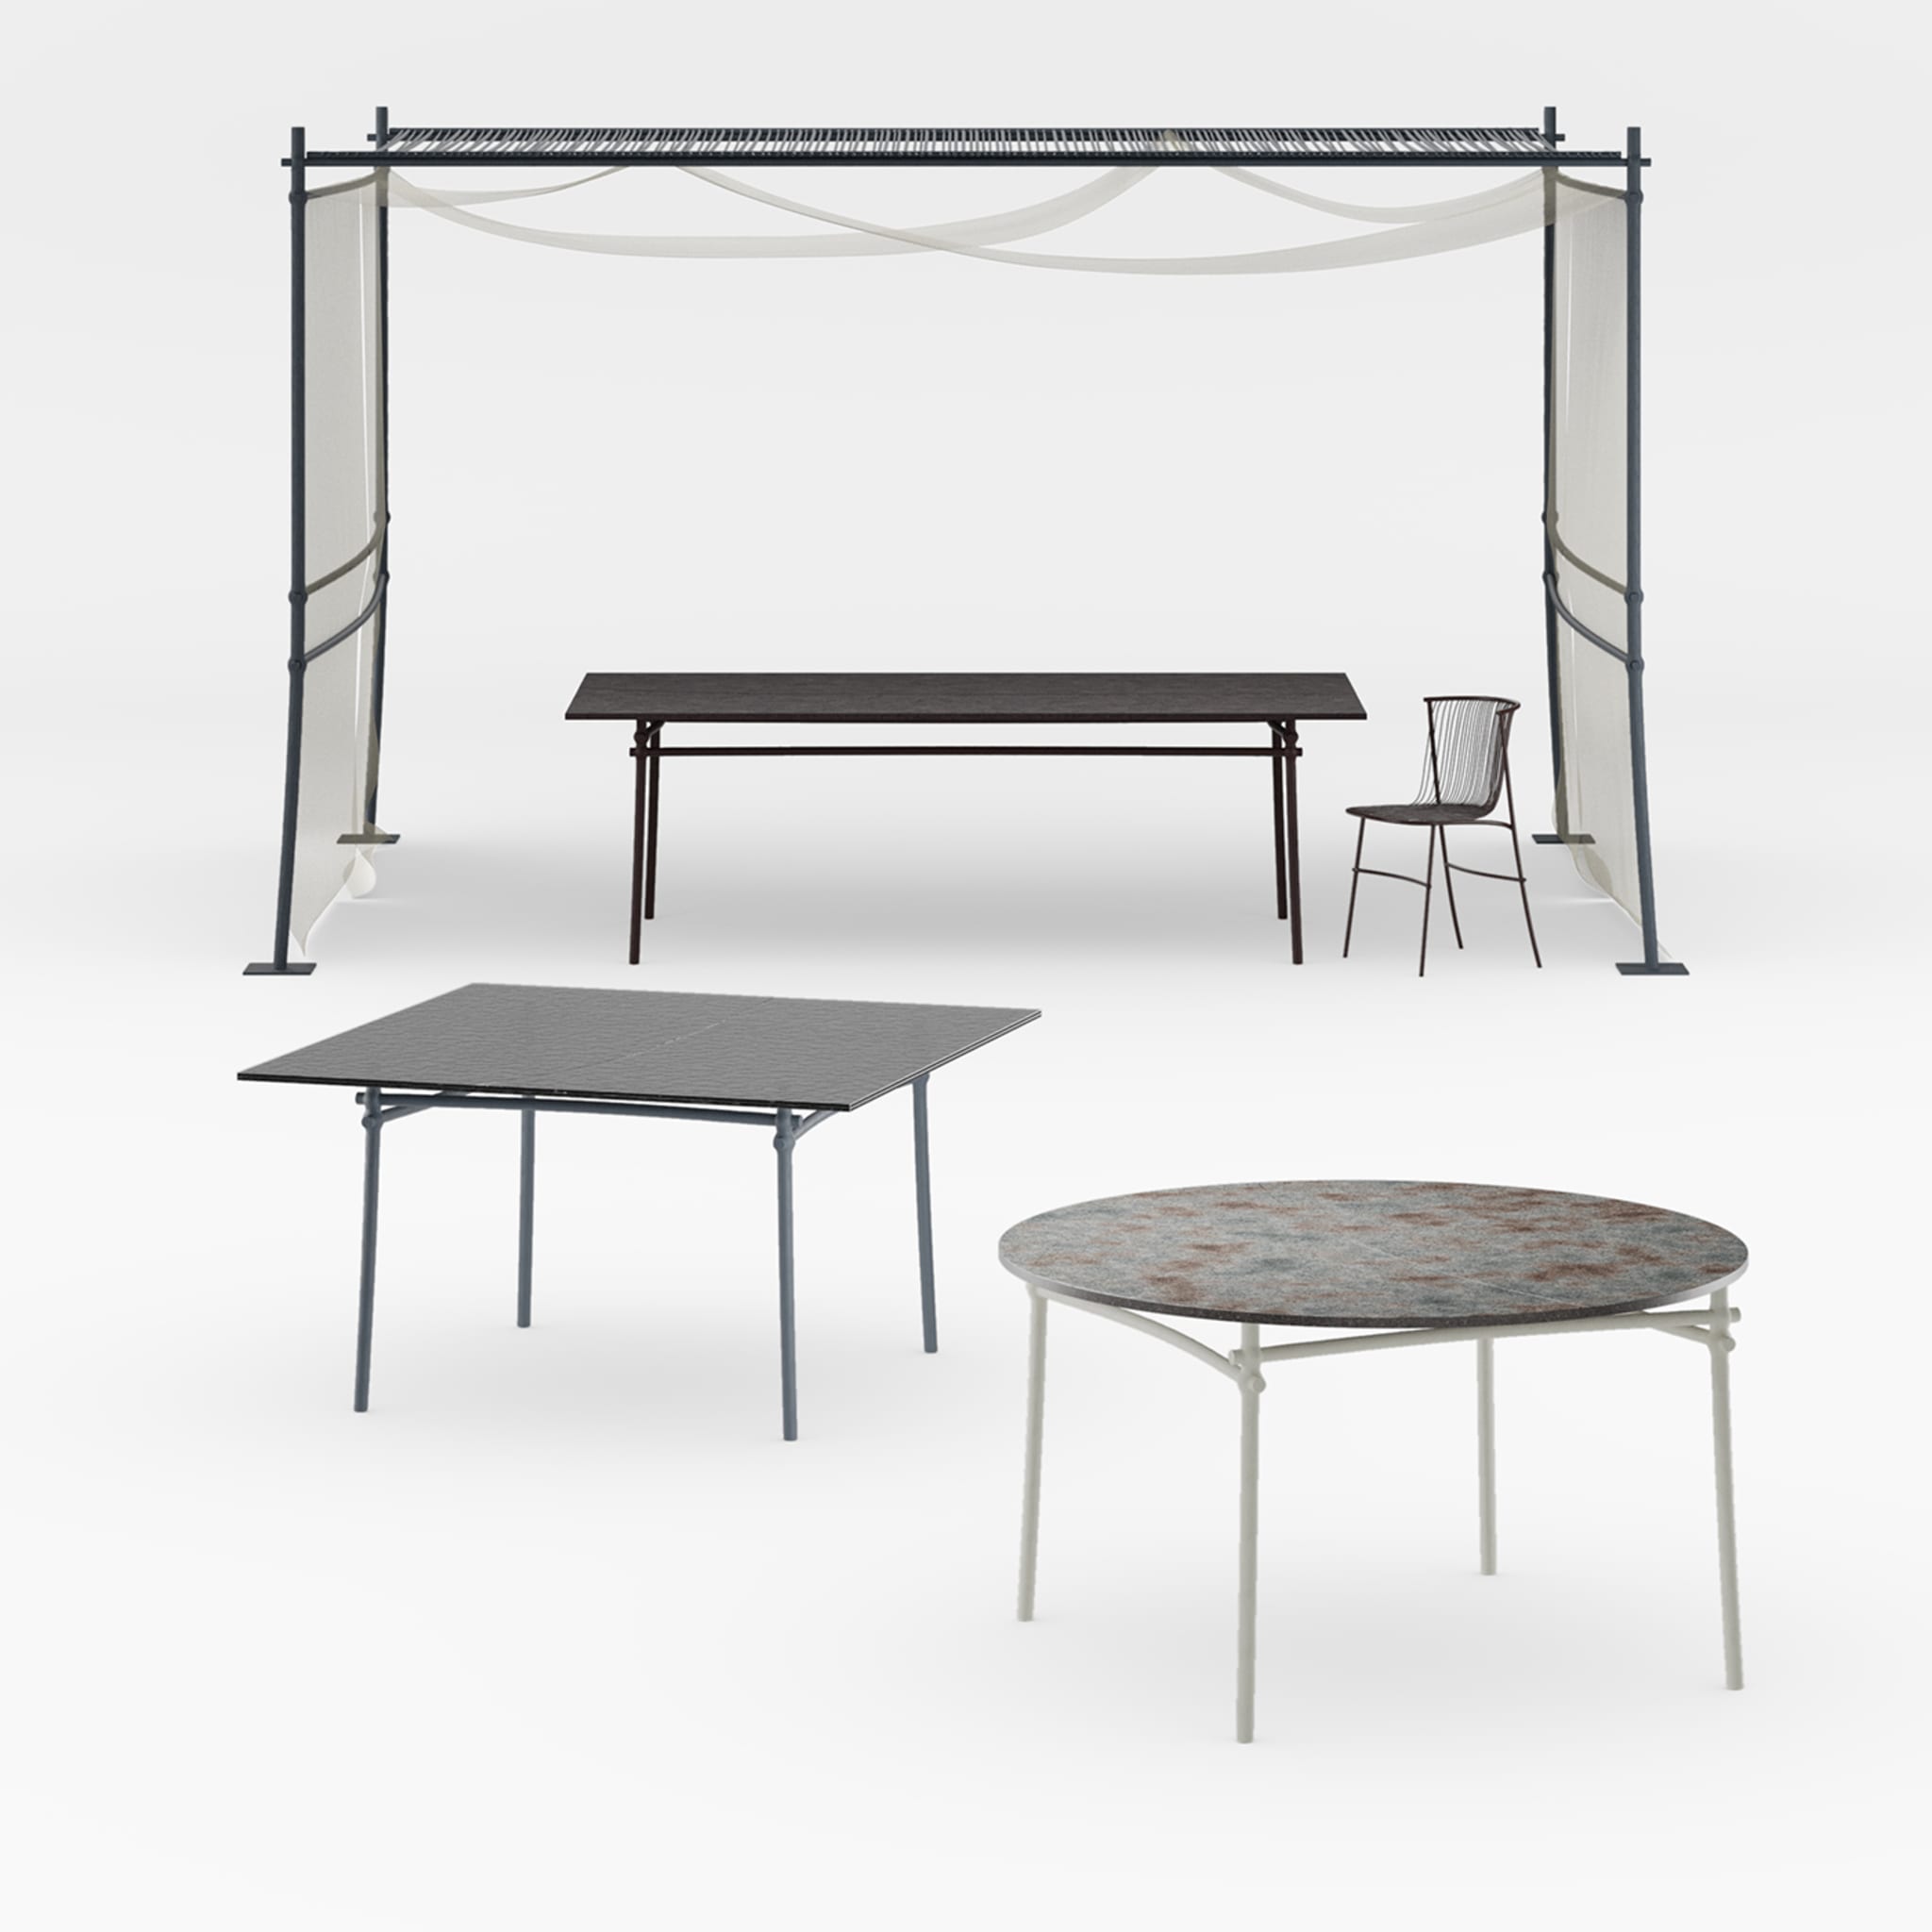 Bambusae Rectangular Dining Table by Zanellato/Bortotto - Alternative view 2